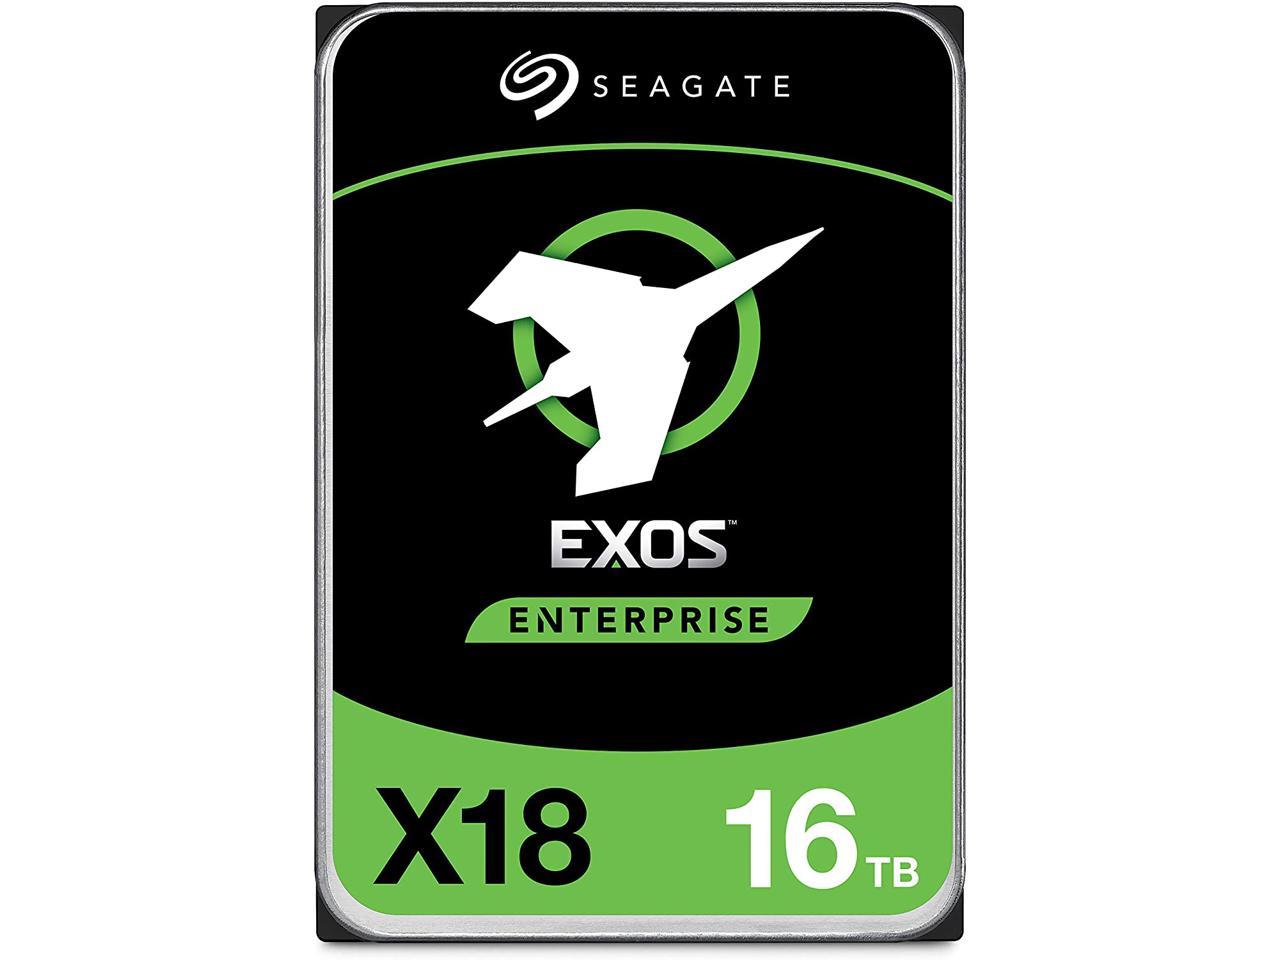 Seagate Exos 16TB Enterprise HDD X18 SATA 6Gb/s 512e/4Kn 7200 RPM 256MB Cache 3.5" Internal Hard Drive (ST16000NM000J) $289.99